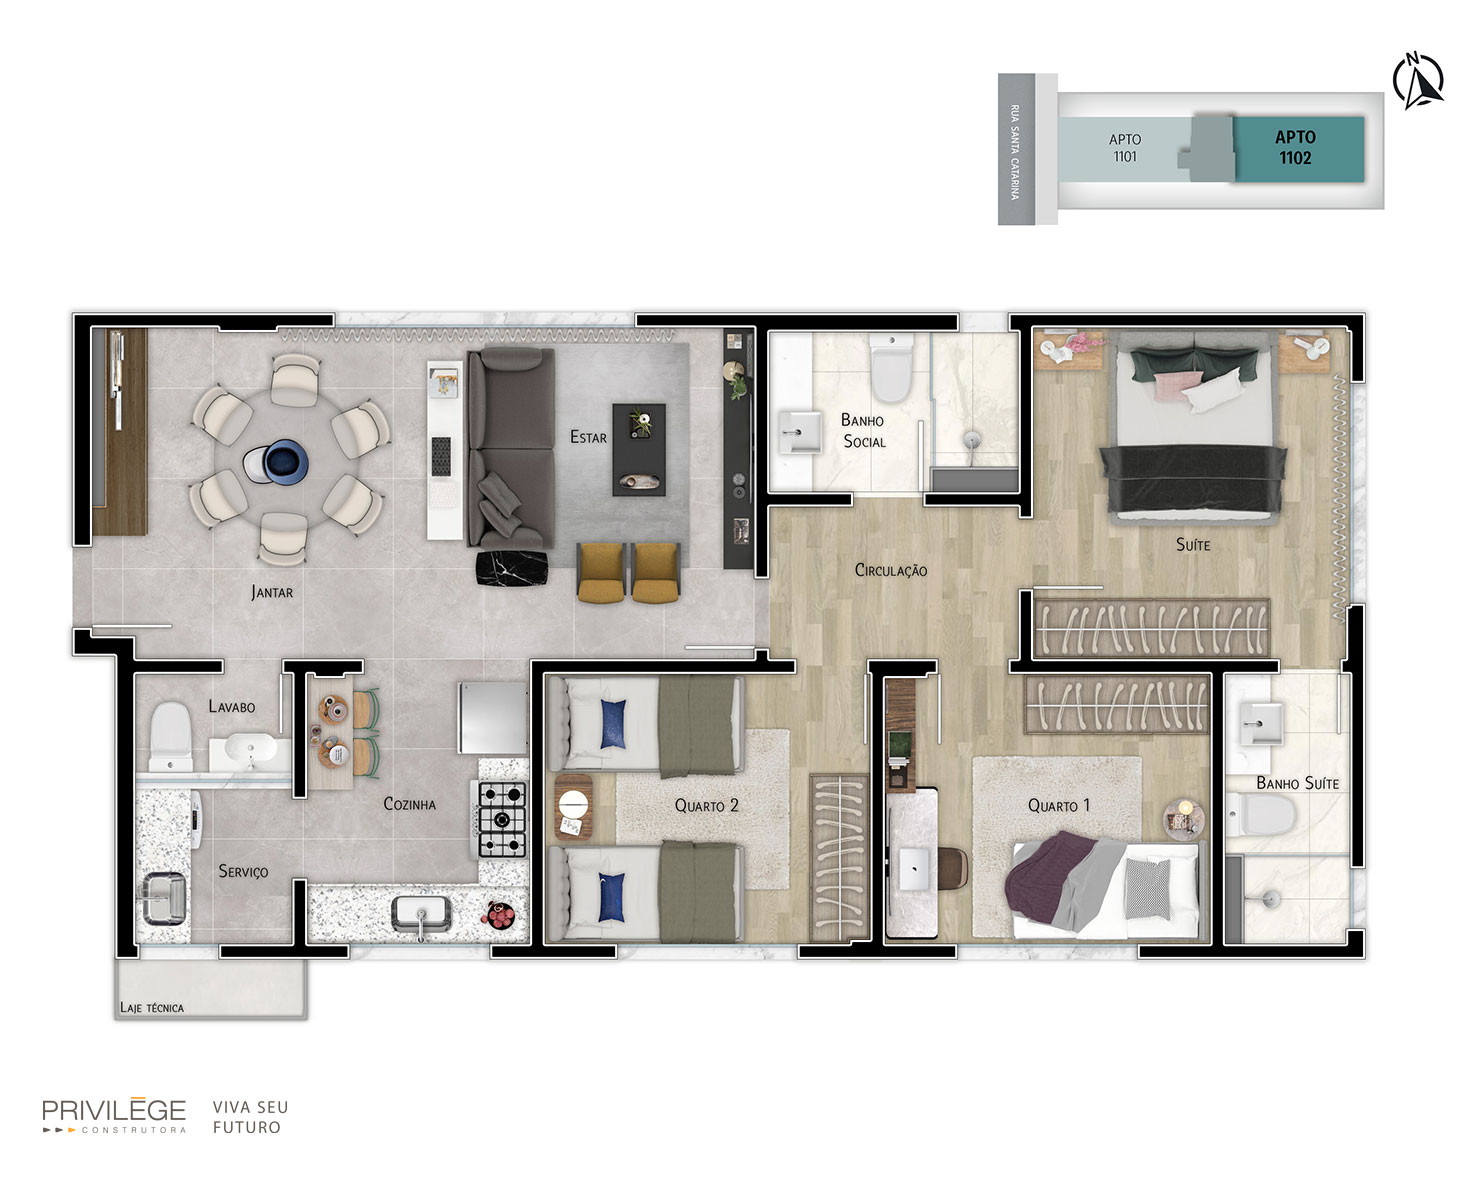 Apartamento 3 quartos com cozinha integrada – 1102